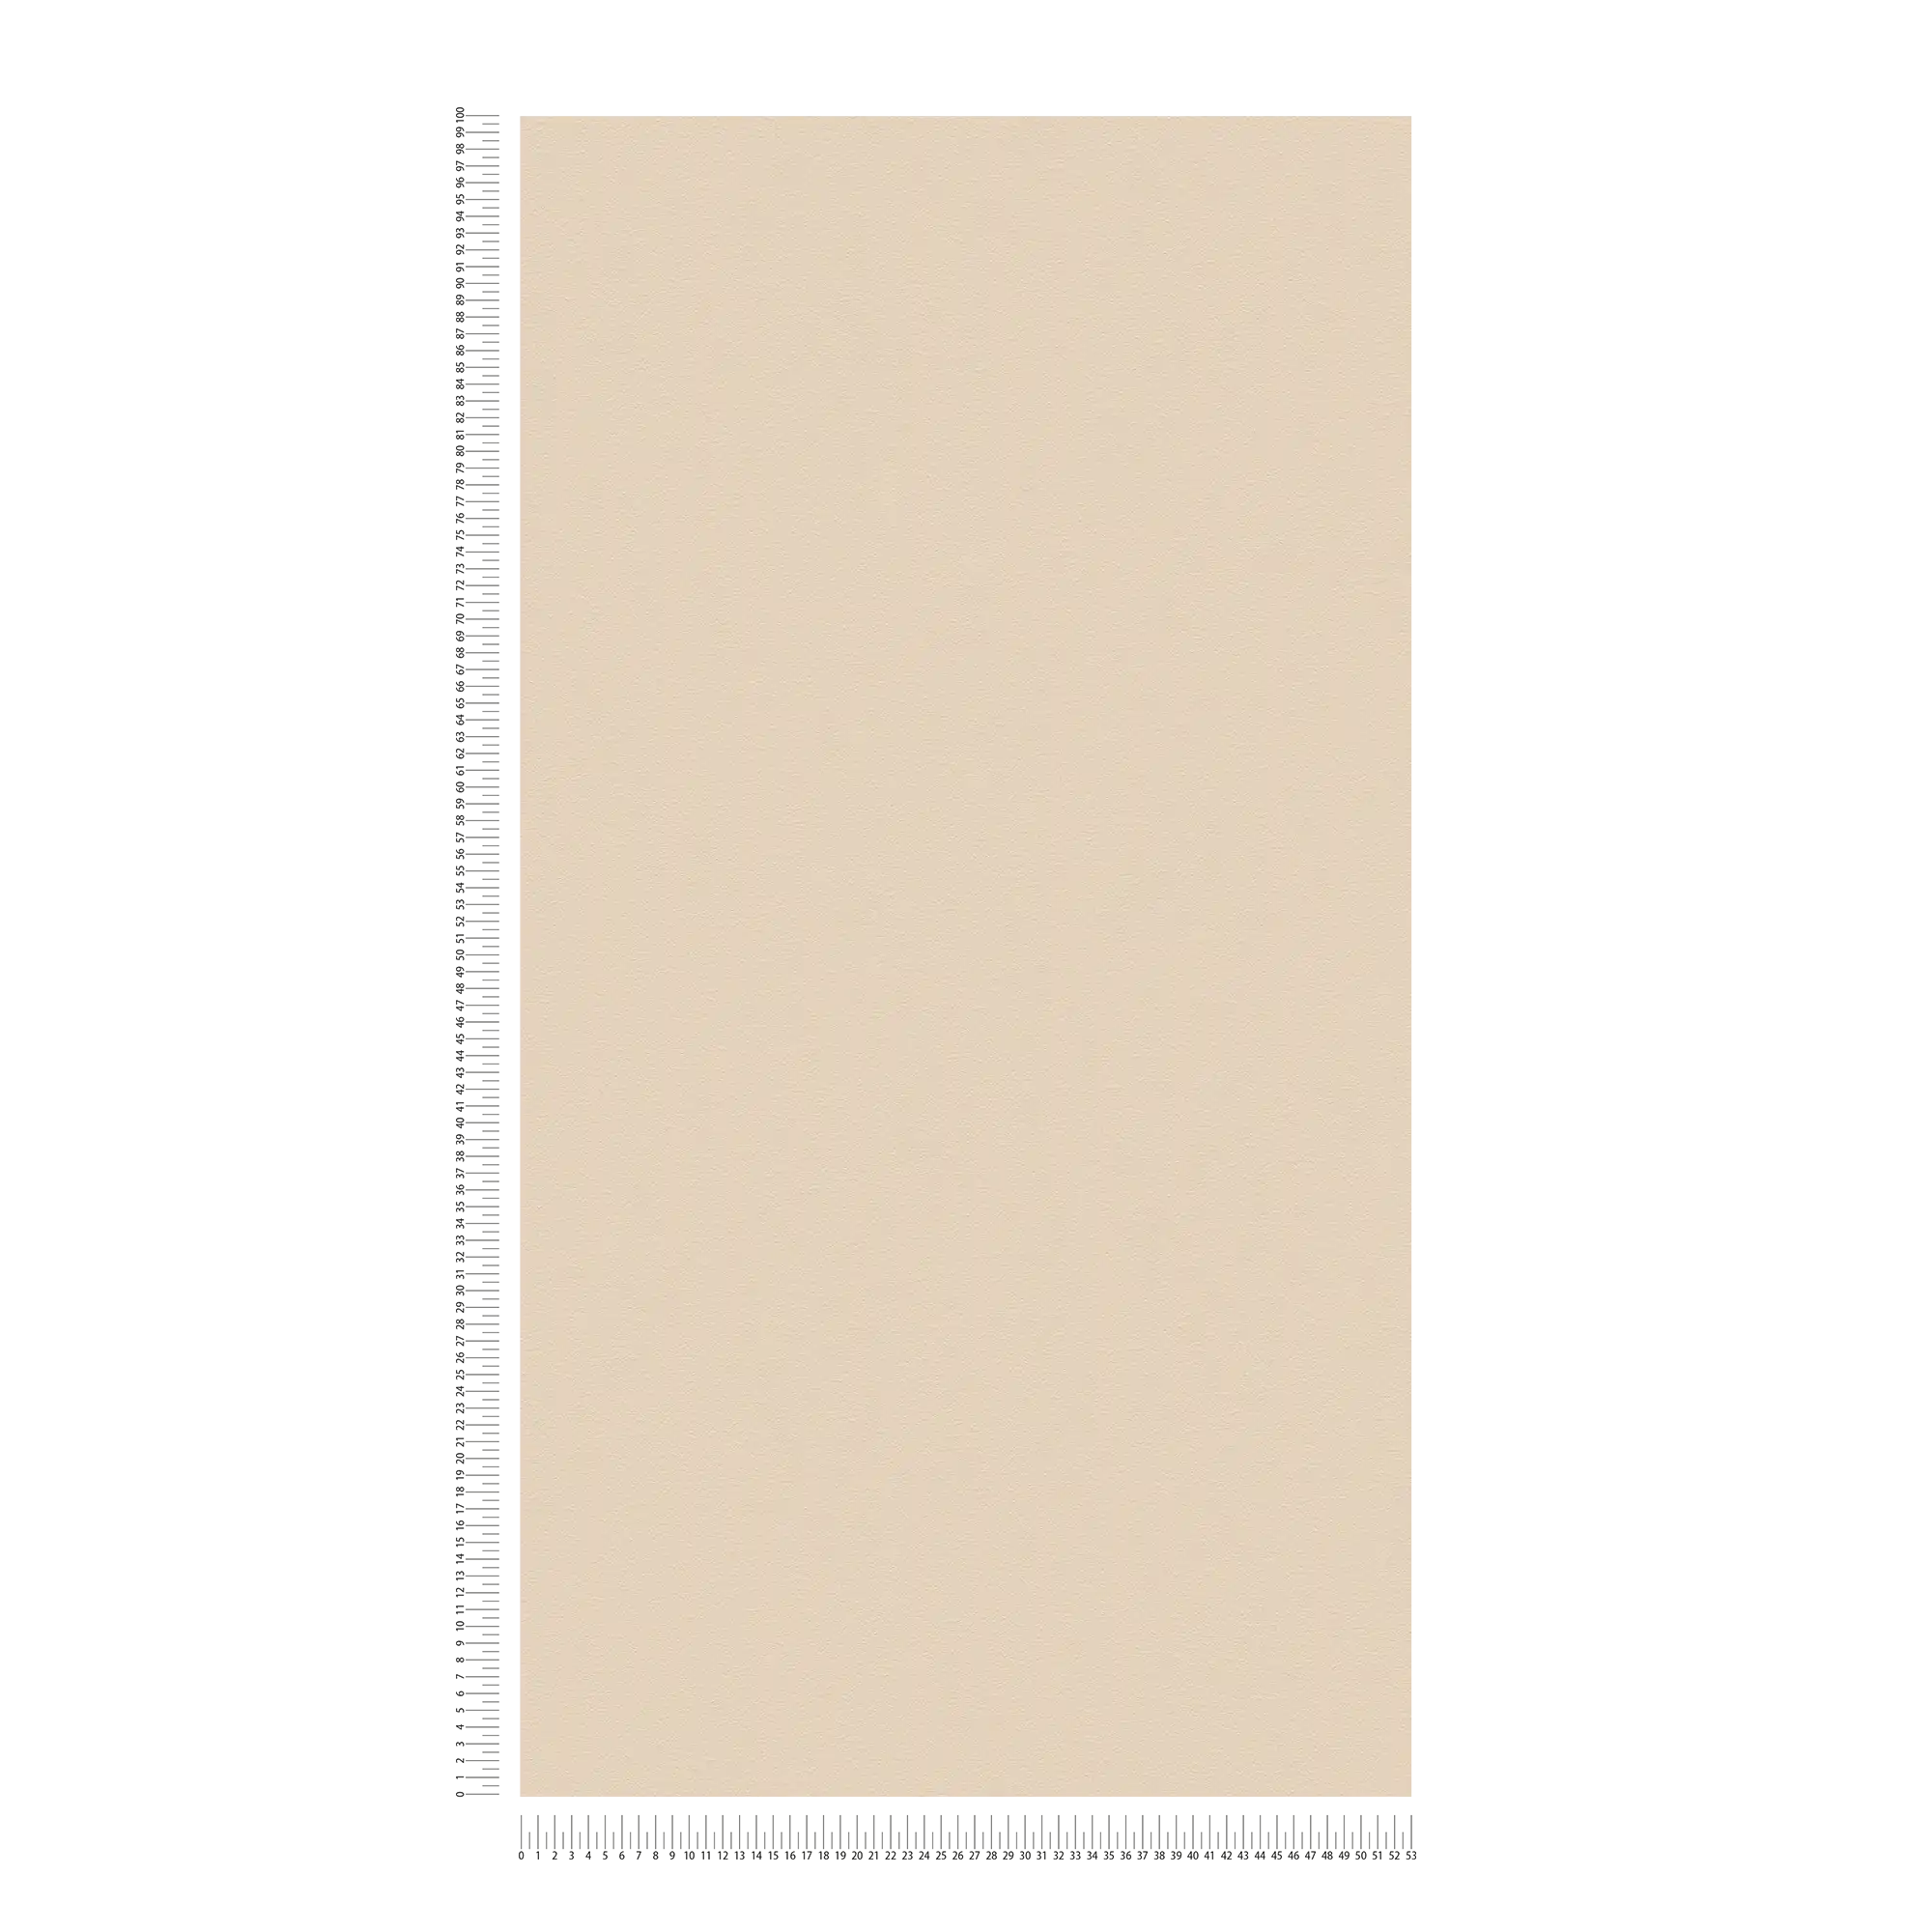             Wallpaper beige monochrome with elephant skin foam texture
        